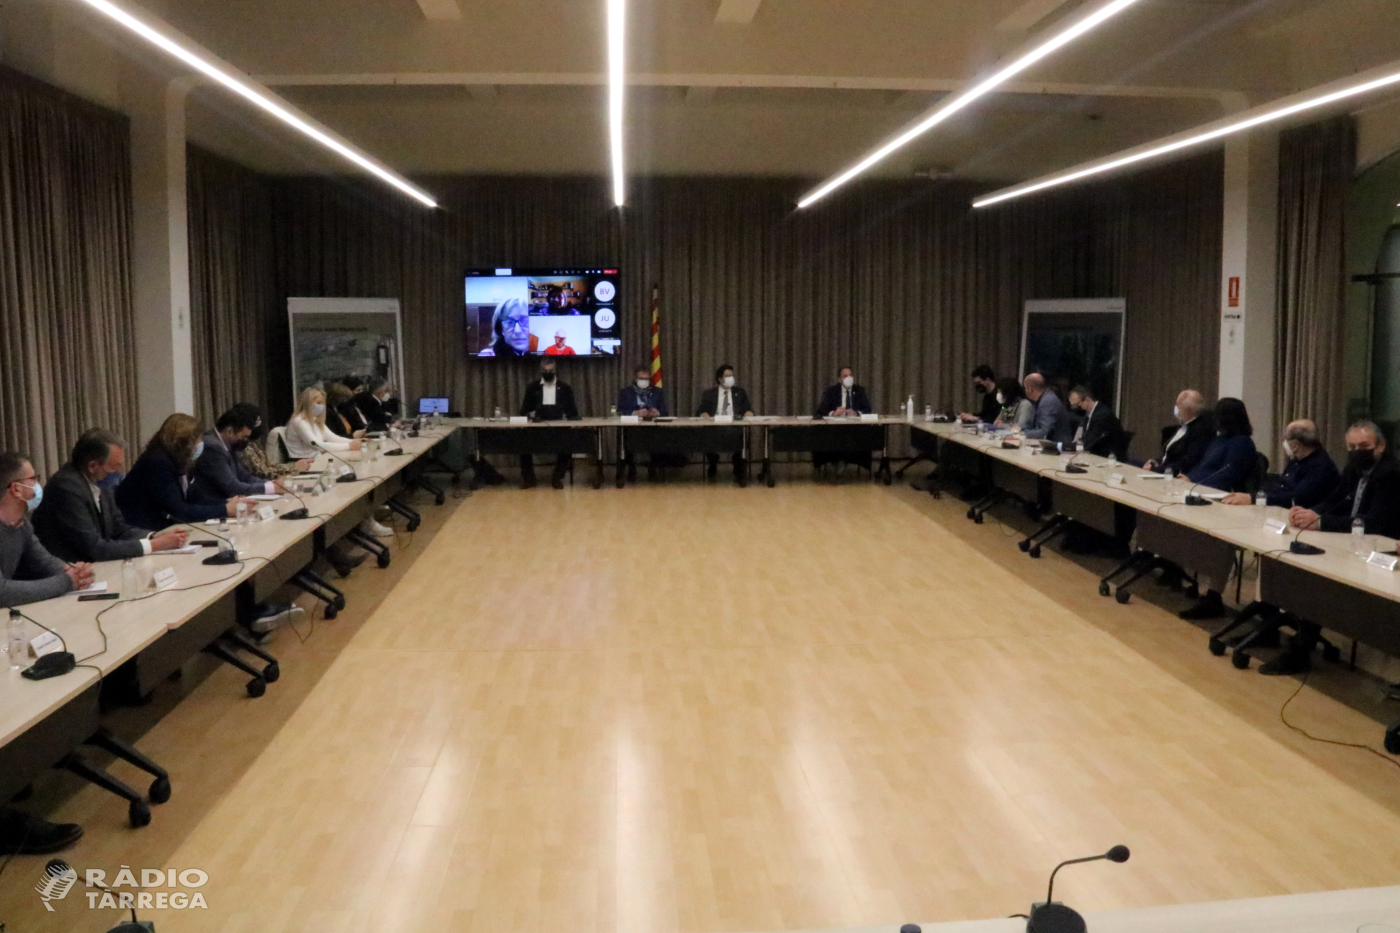 El Govern sondeja a Renfe la possibilitat d'augmentar freqüències a les línies Lleida-Cervera i Lleida-les Borges